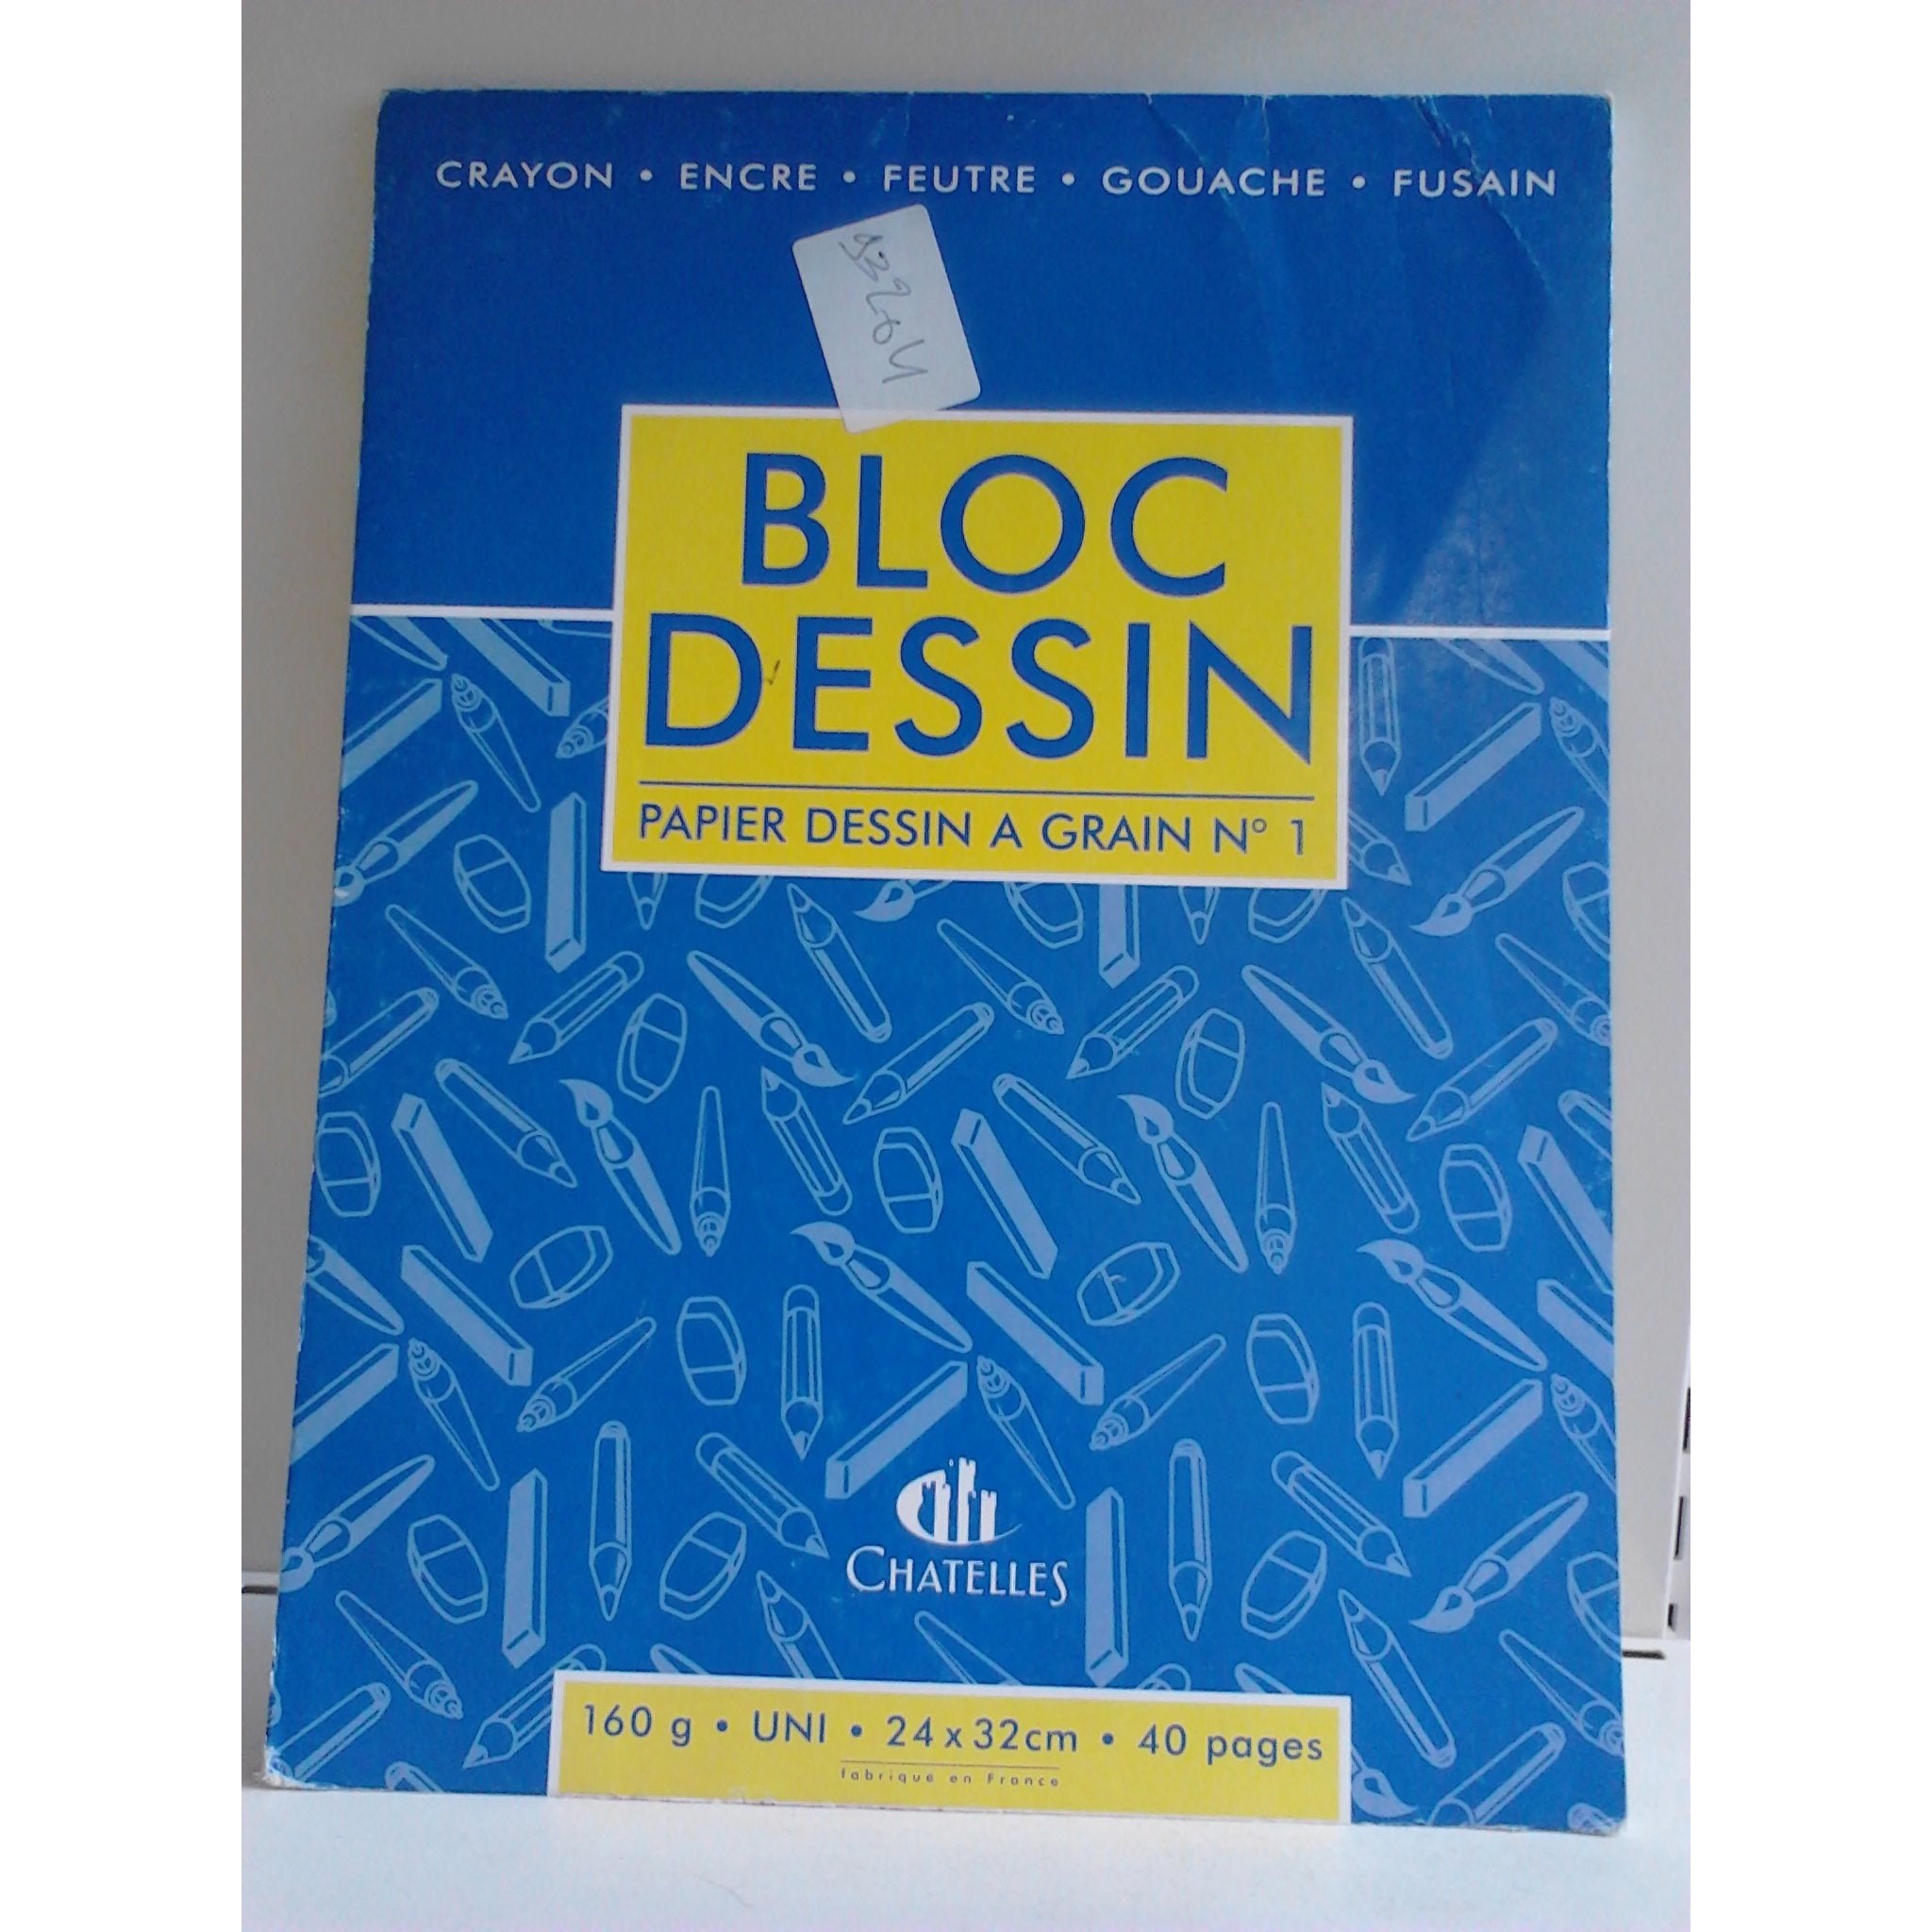 Bloc Dessin A4 maxi 24x32 40p 160g -20%